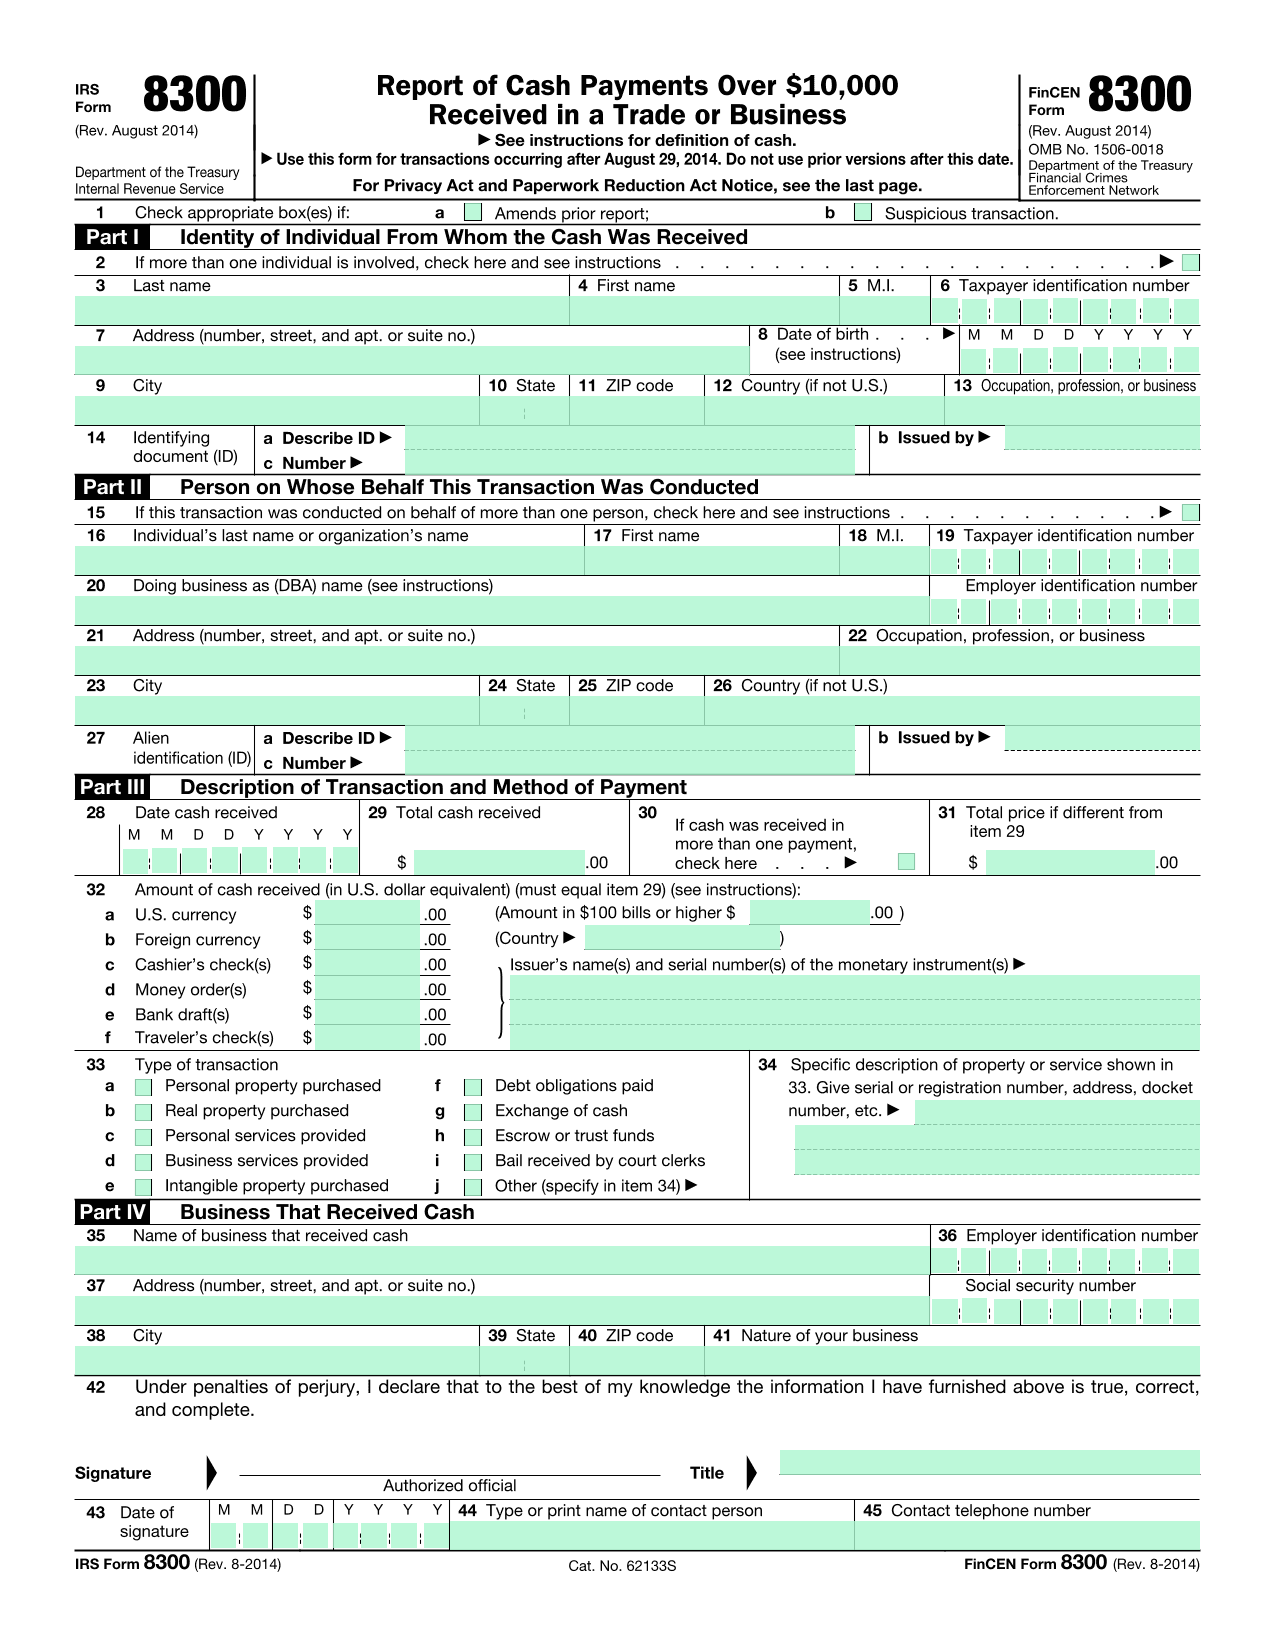 IRS Form 8300 screenshot